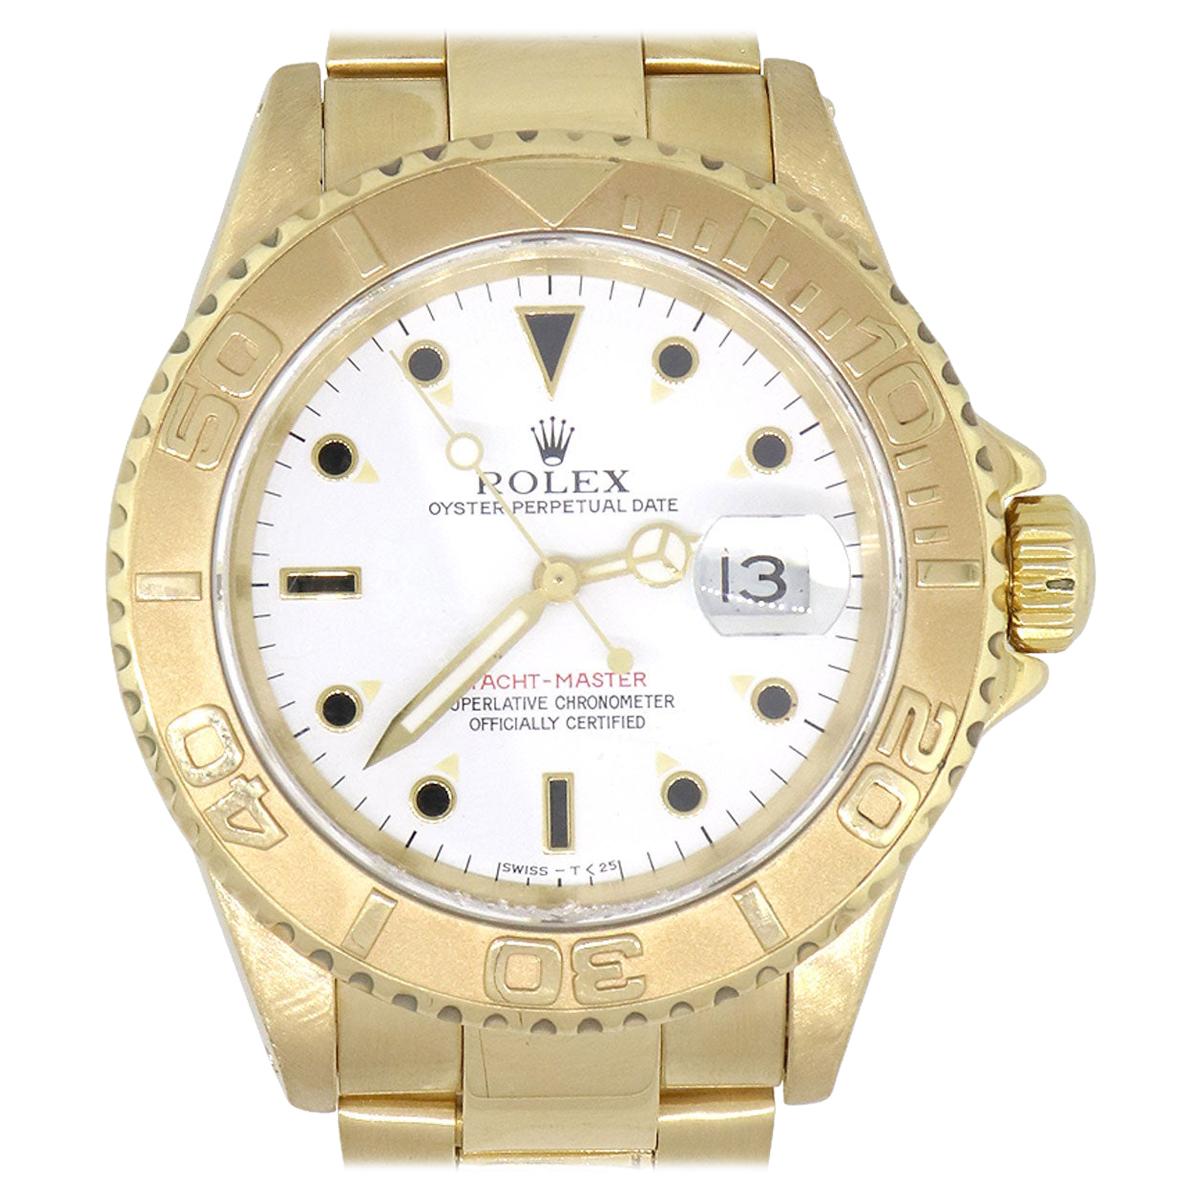 Rolex 16628 Yacht-Master 18 Karat Yellow Gold White Dial Watch